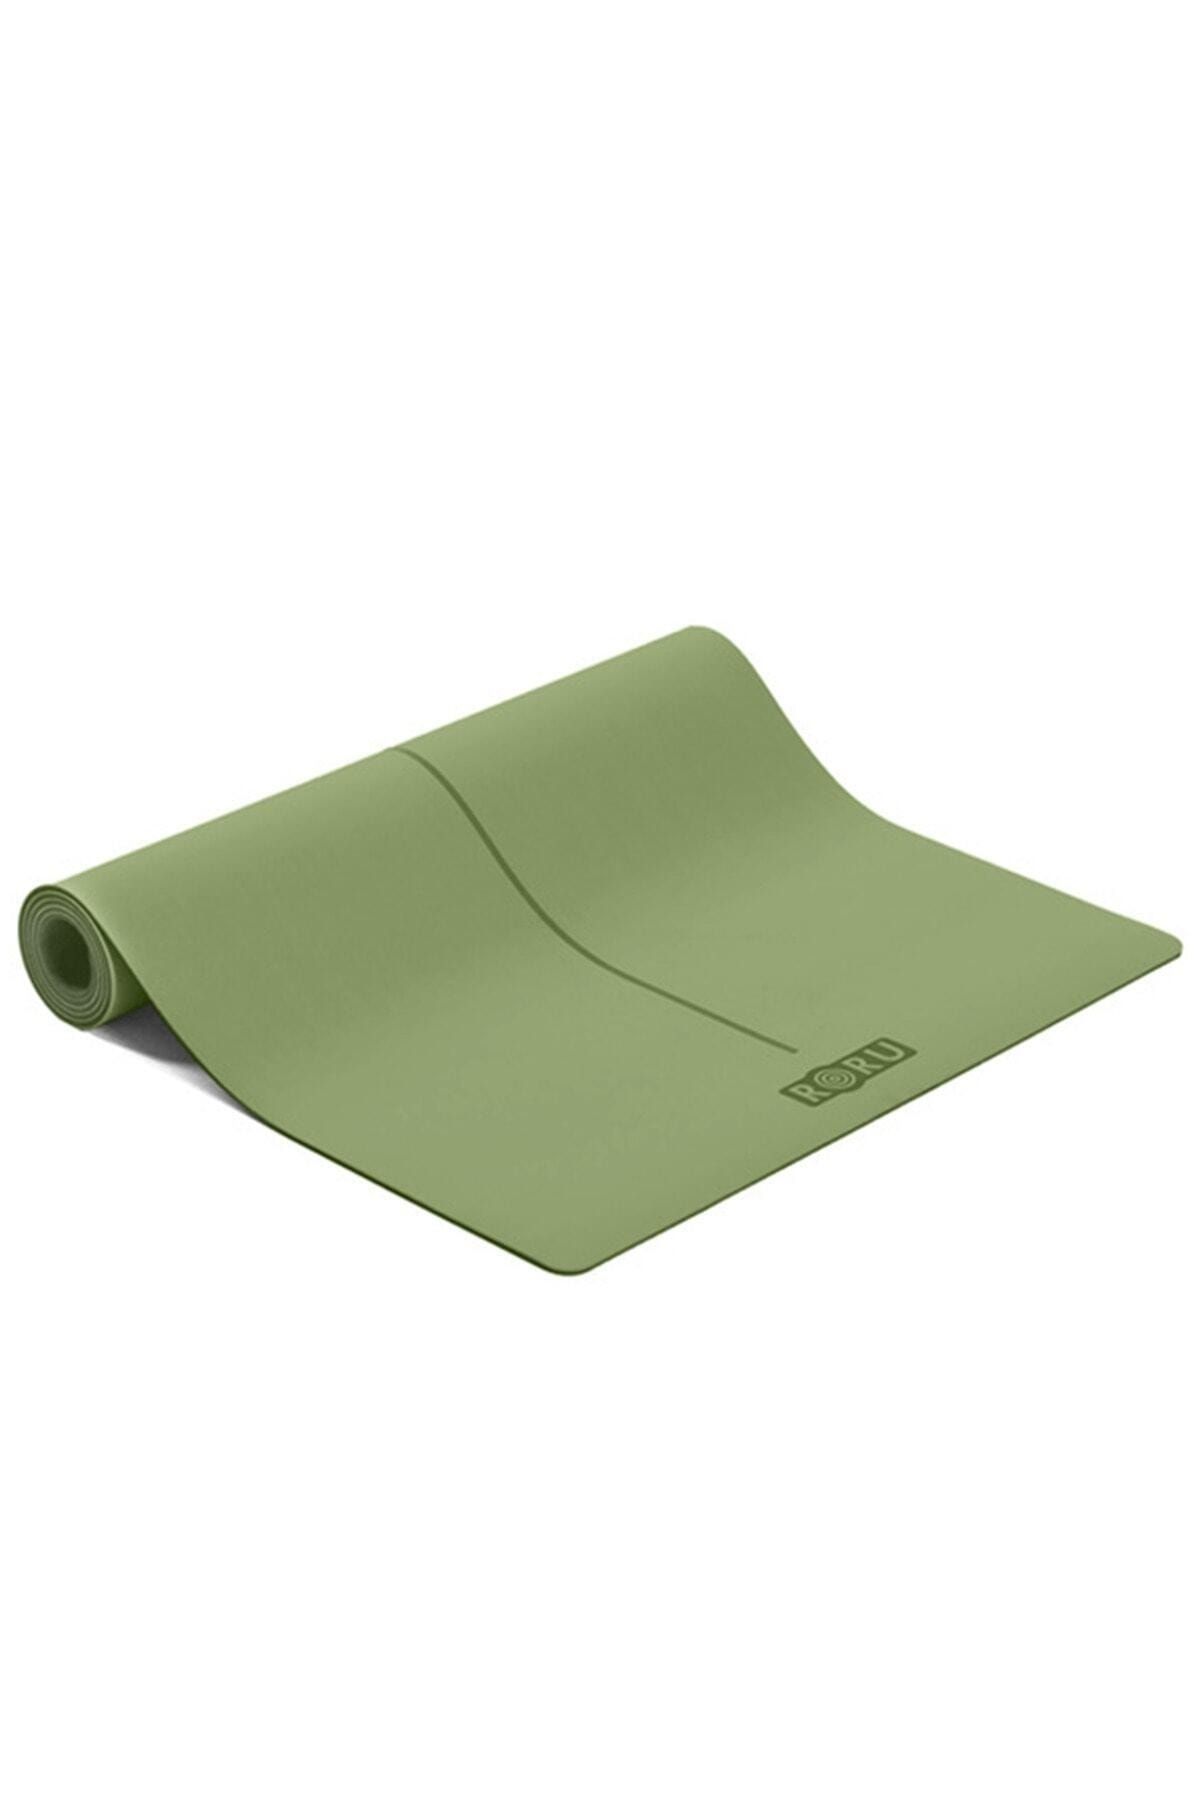 Roru Sun Series Kaydırmaz Yüzeyli 5mm Yoga Matı - Soft Yeşil